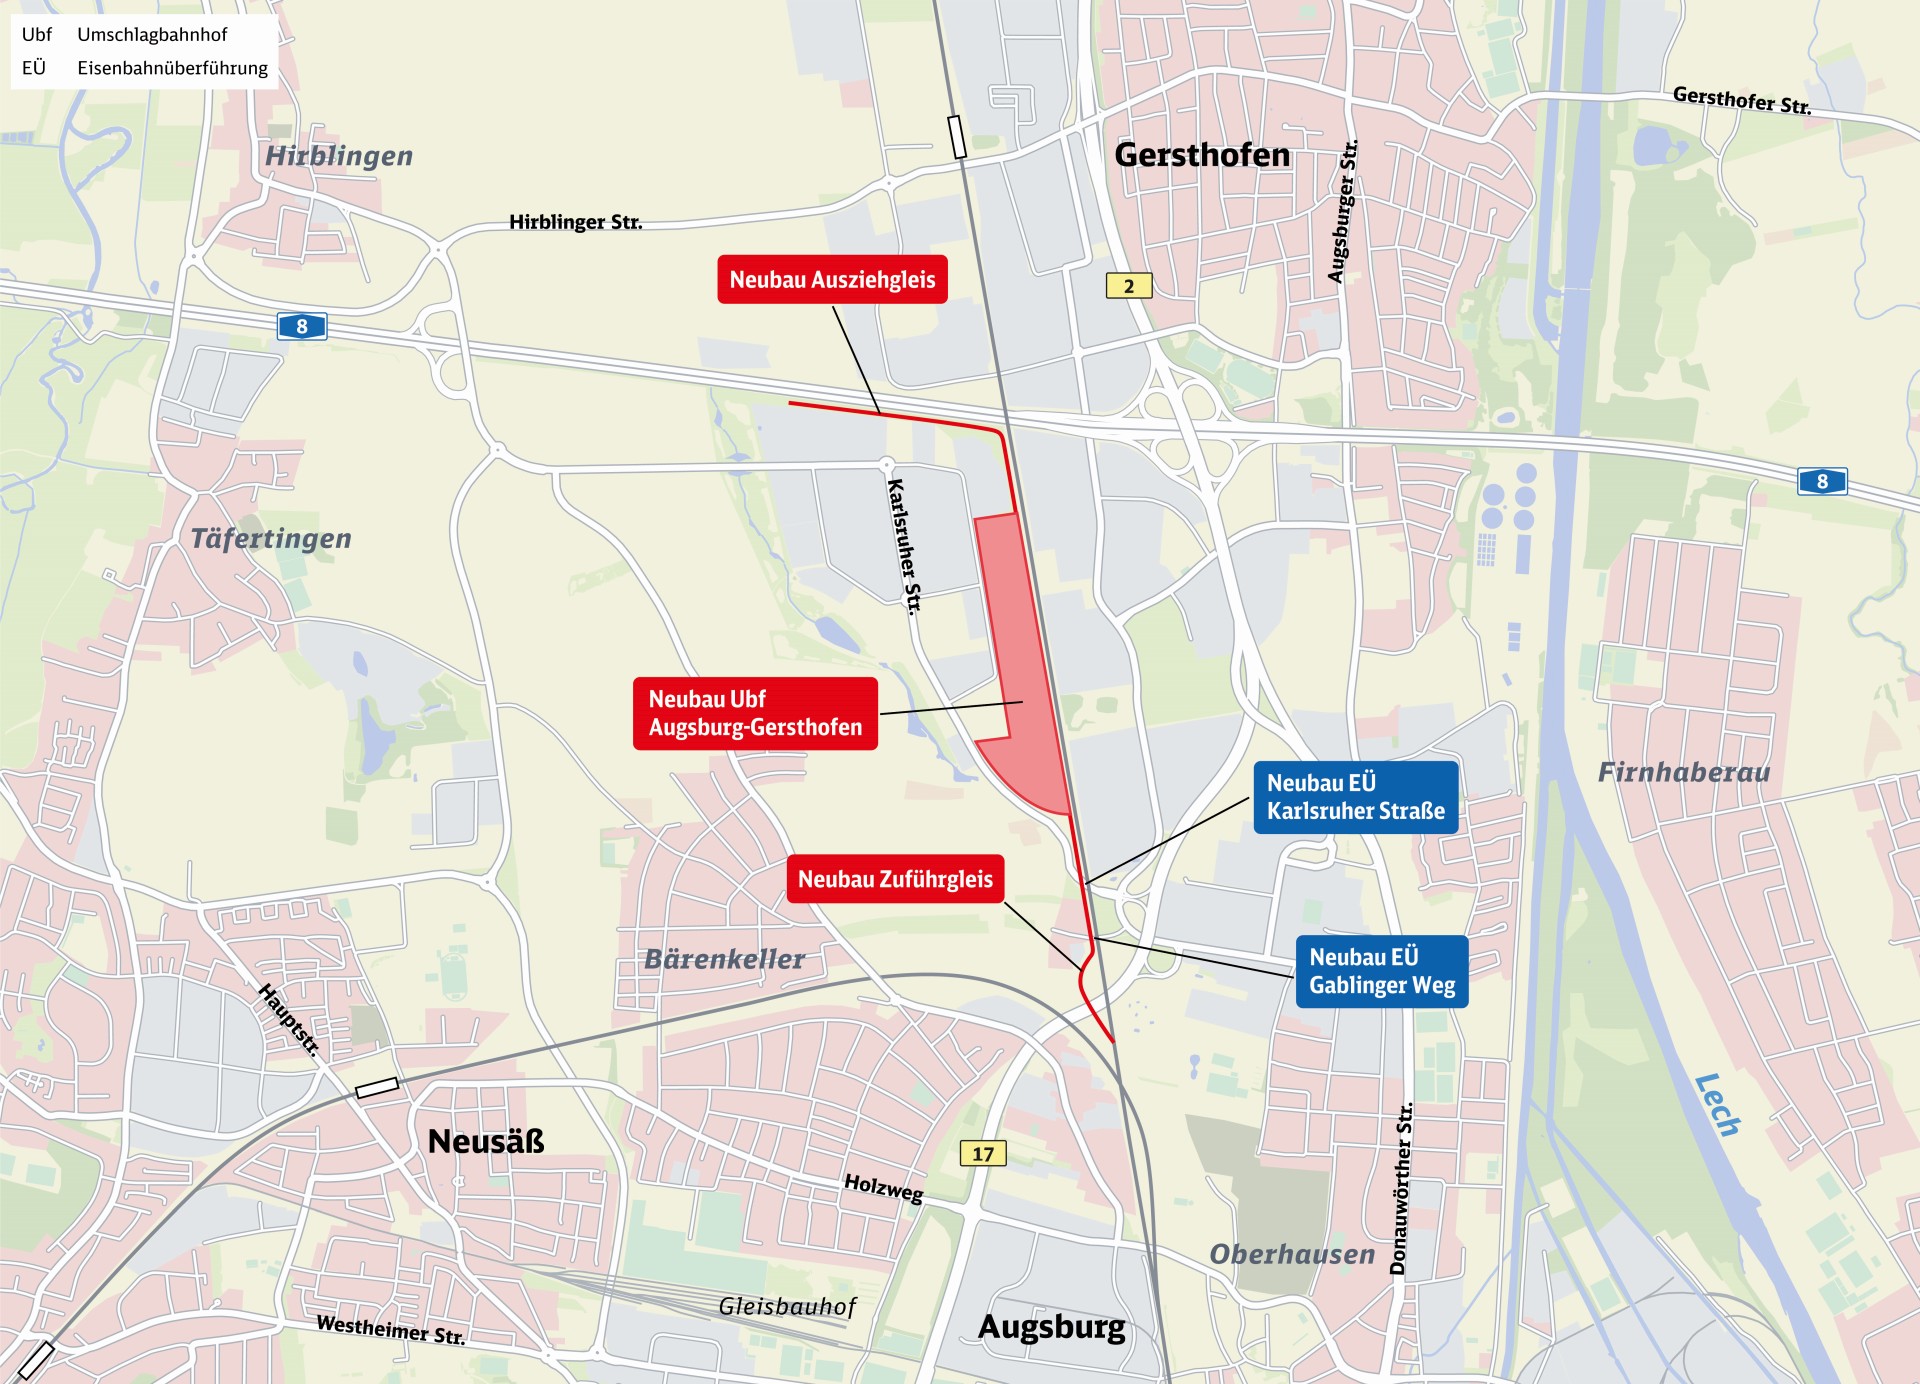 Übersichtskarte mit Erweiterungen am KV-Terminal Augsburg-Gersthofen